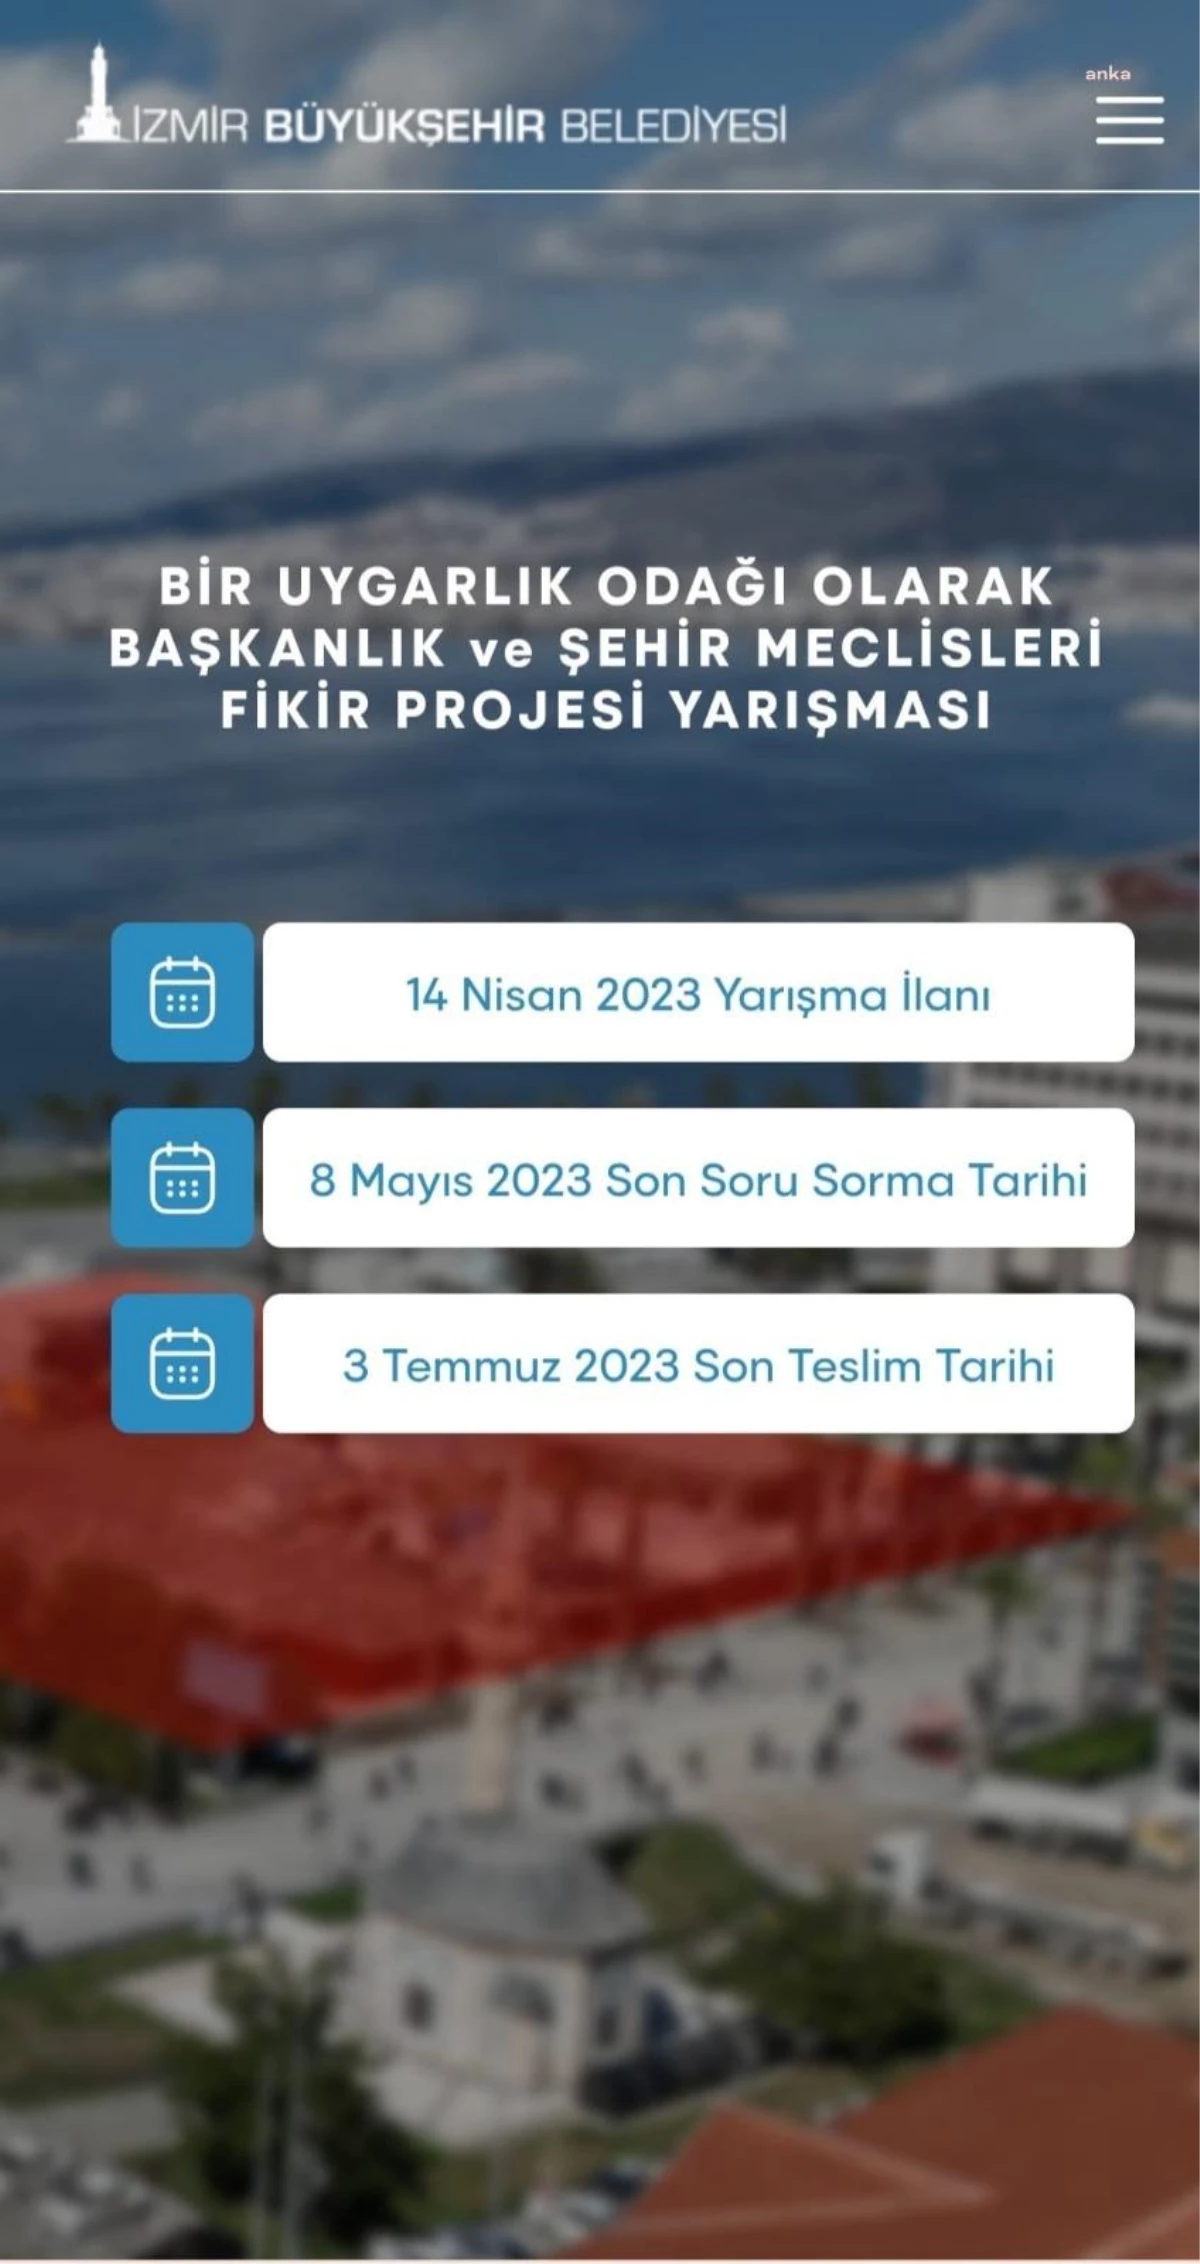 İzmir Büyükşehir Belediyesi, Anıt Yapı İçin Fikir Projesi Yarışması Düzenliyor